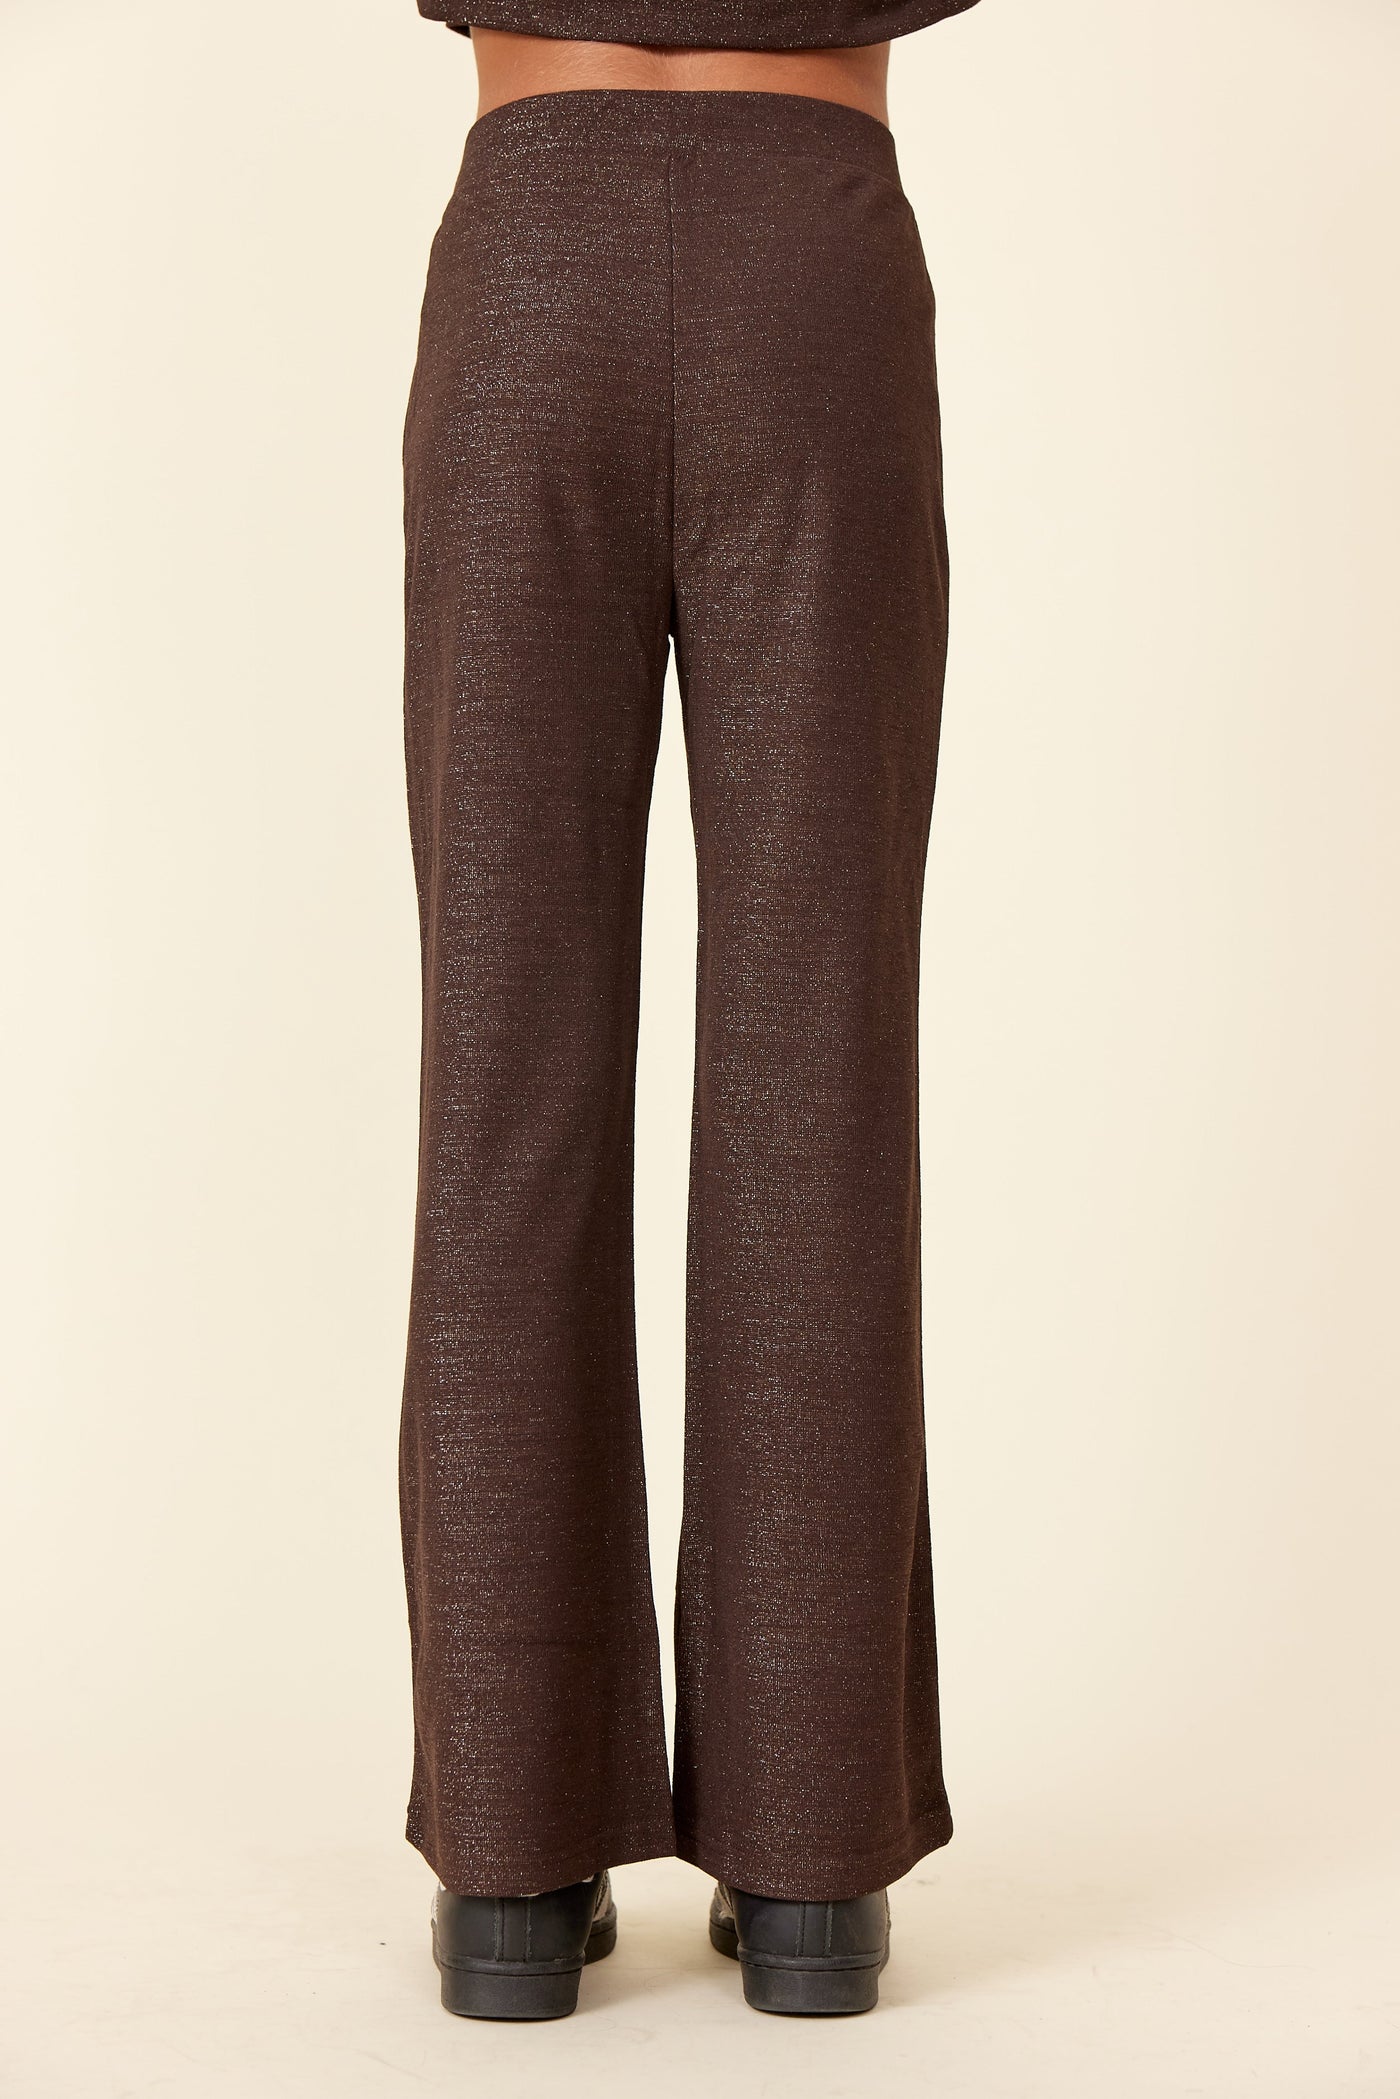 Glitrende brune bukser